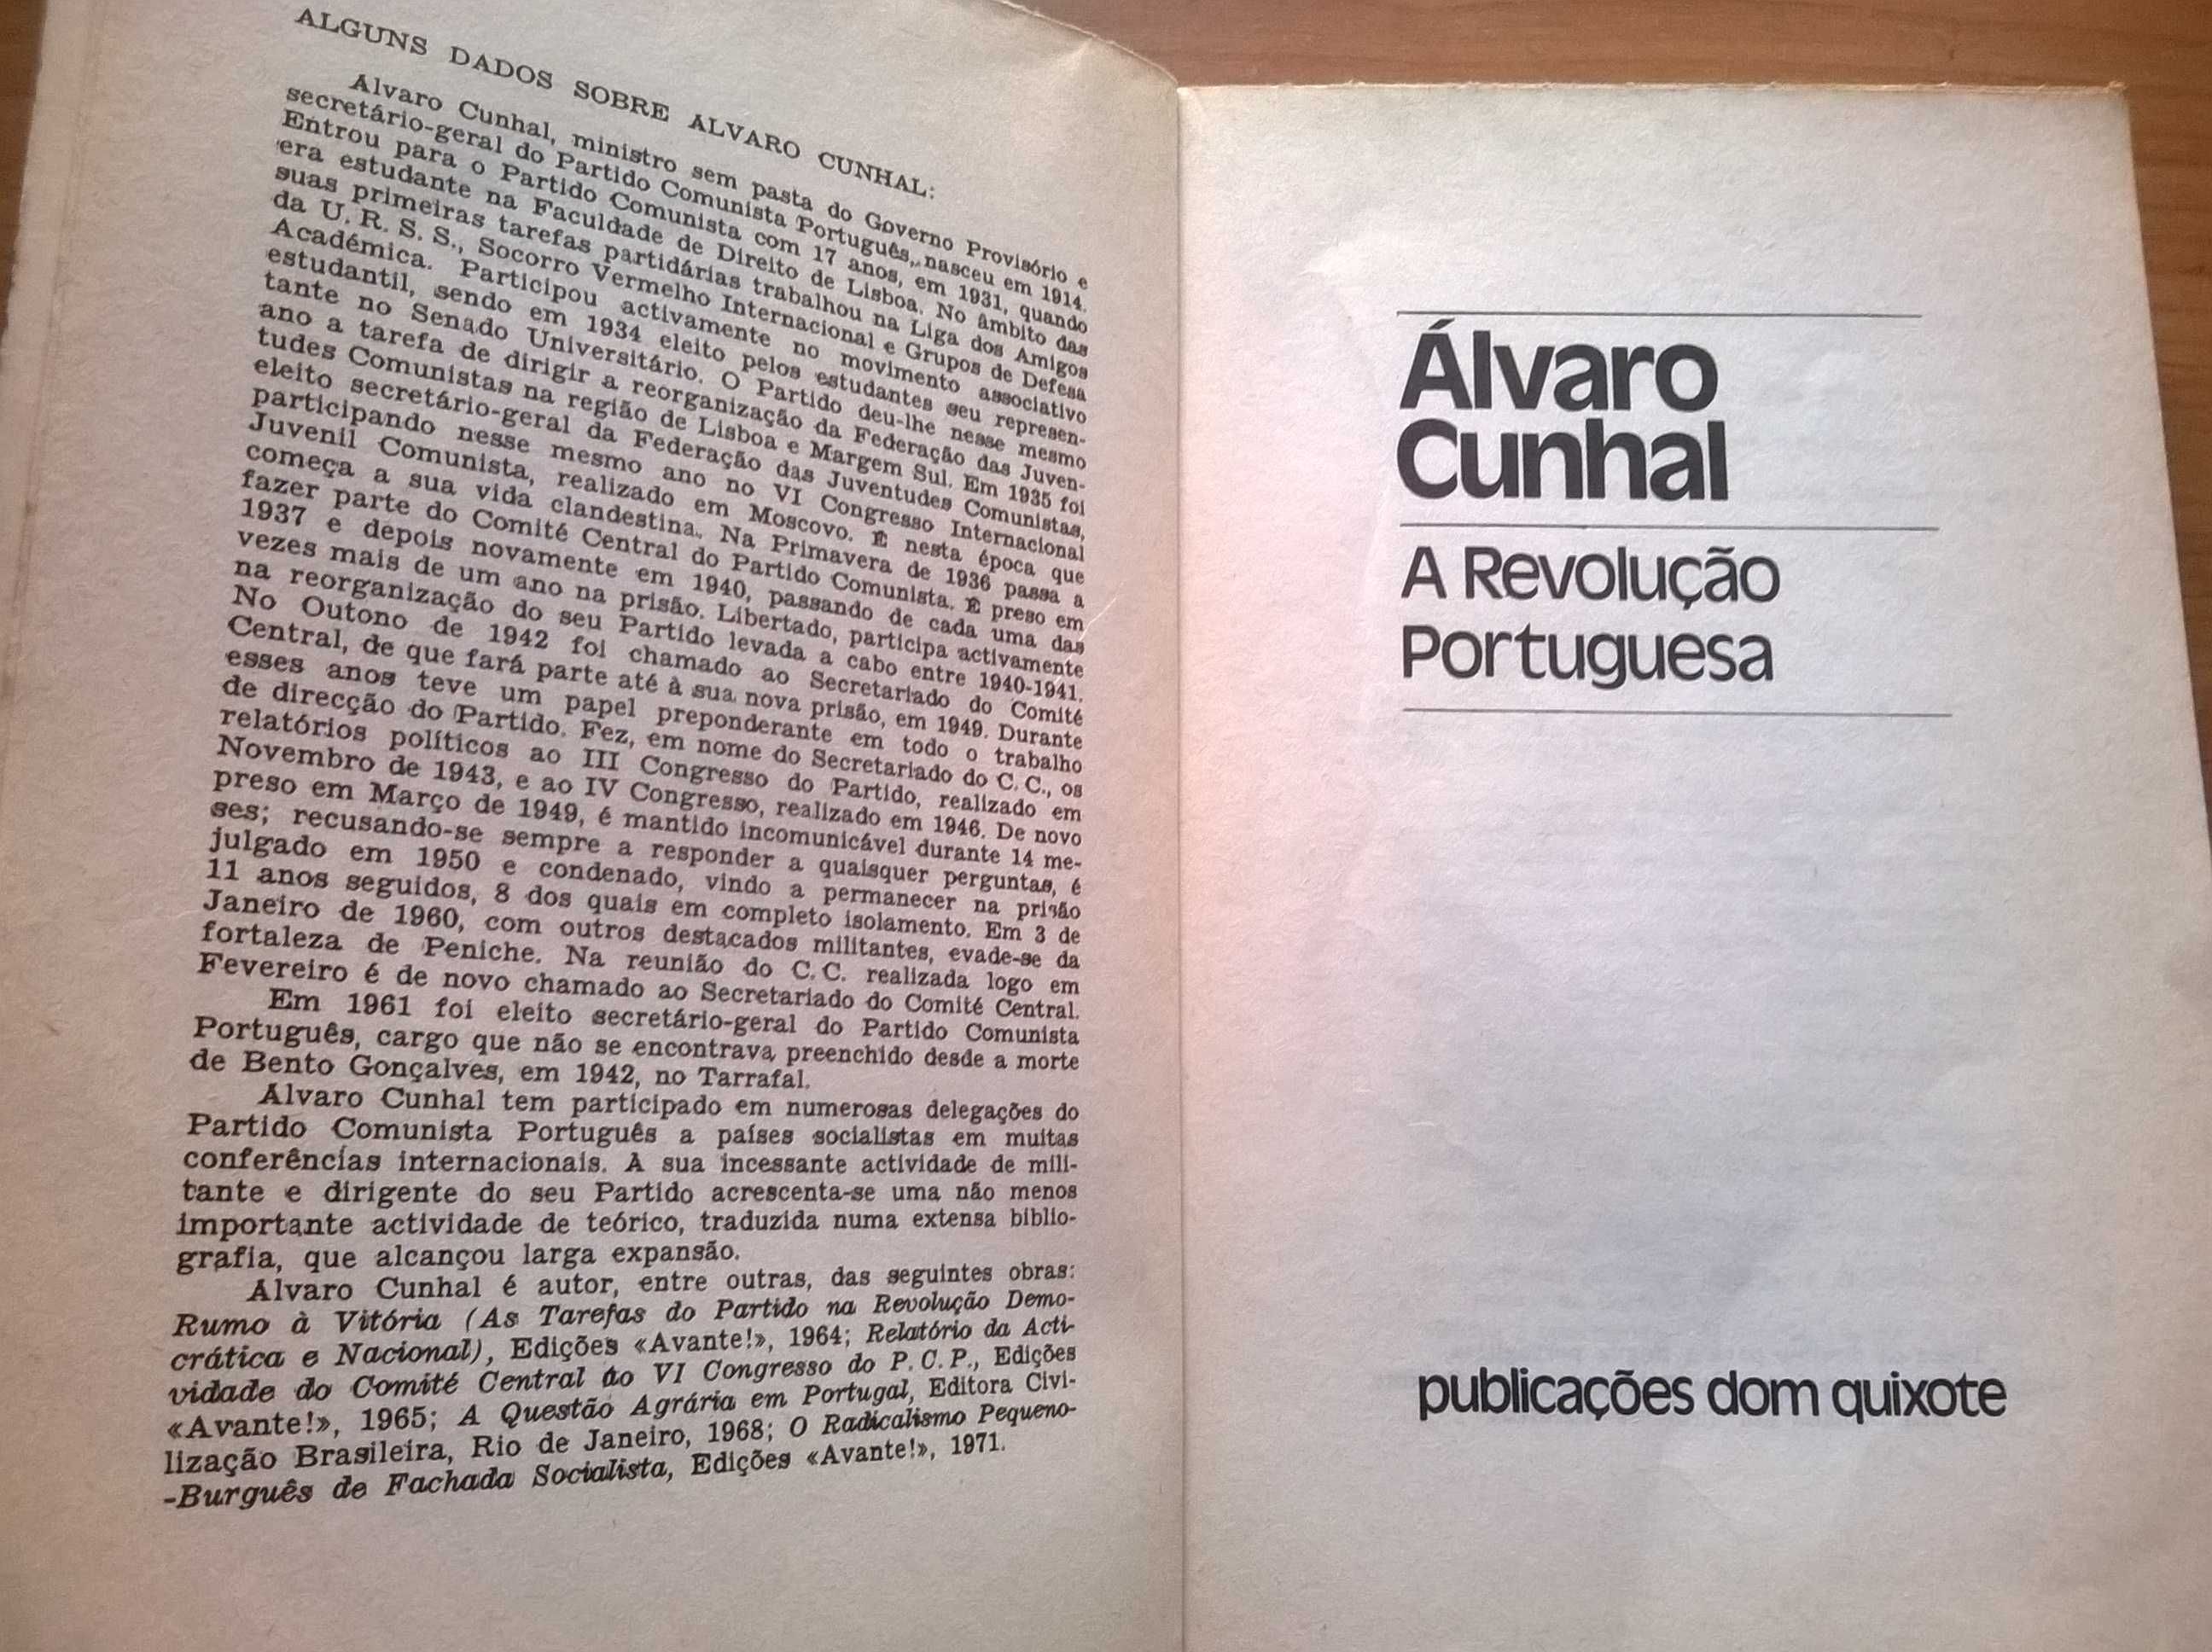 A Revolução Portuguesa - Álvaro Cunhal (portes grátis)